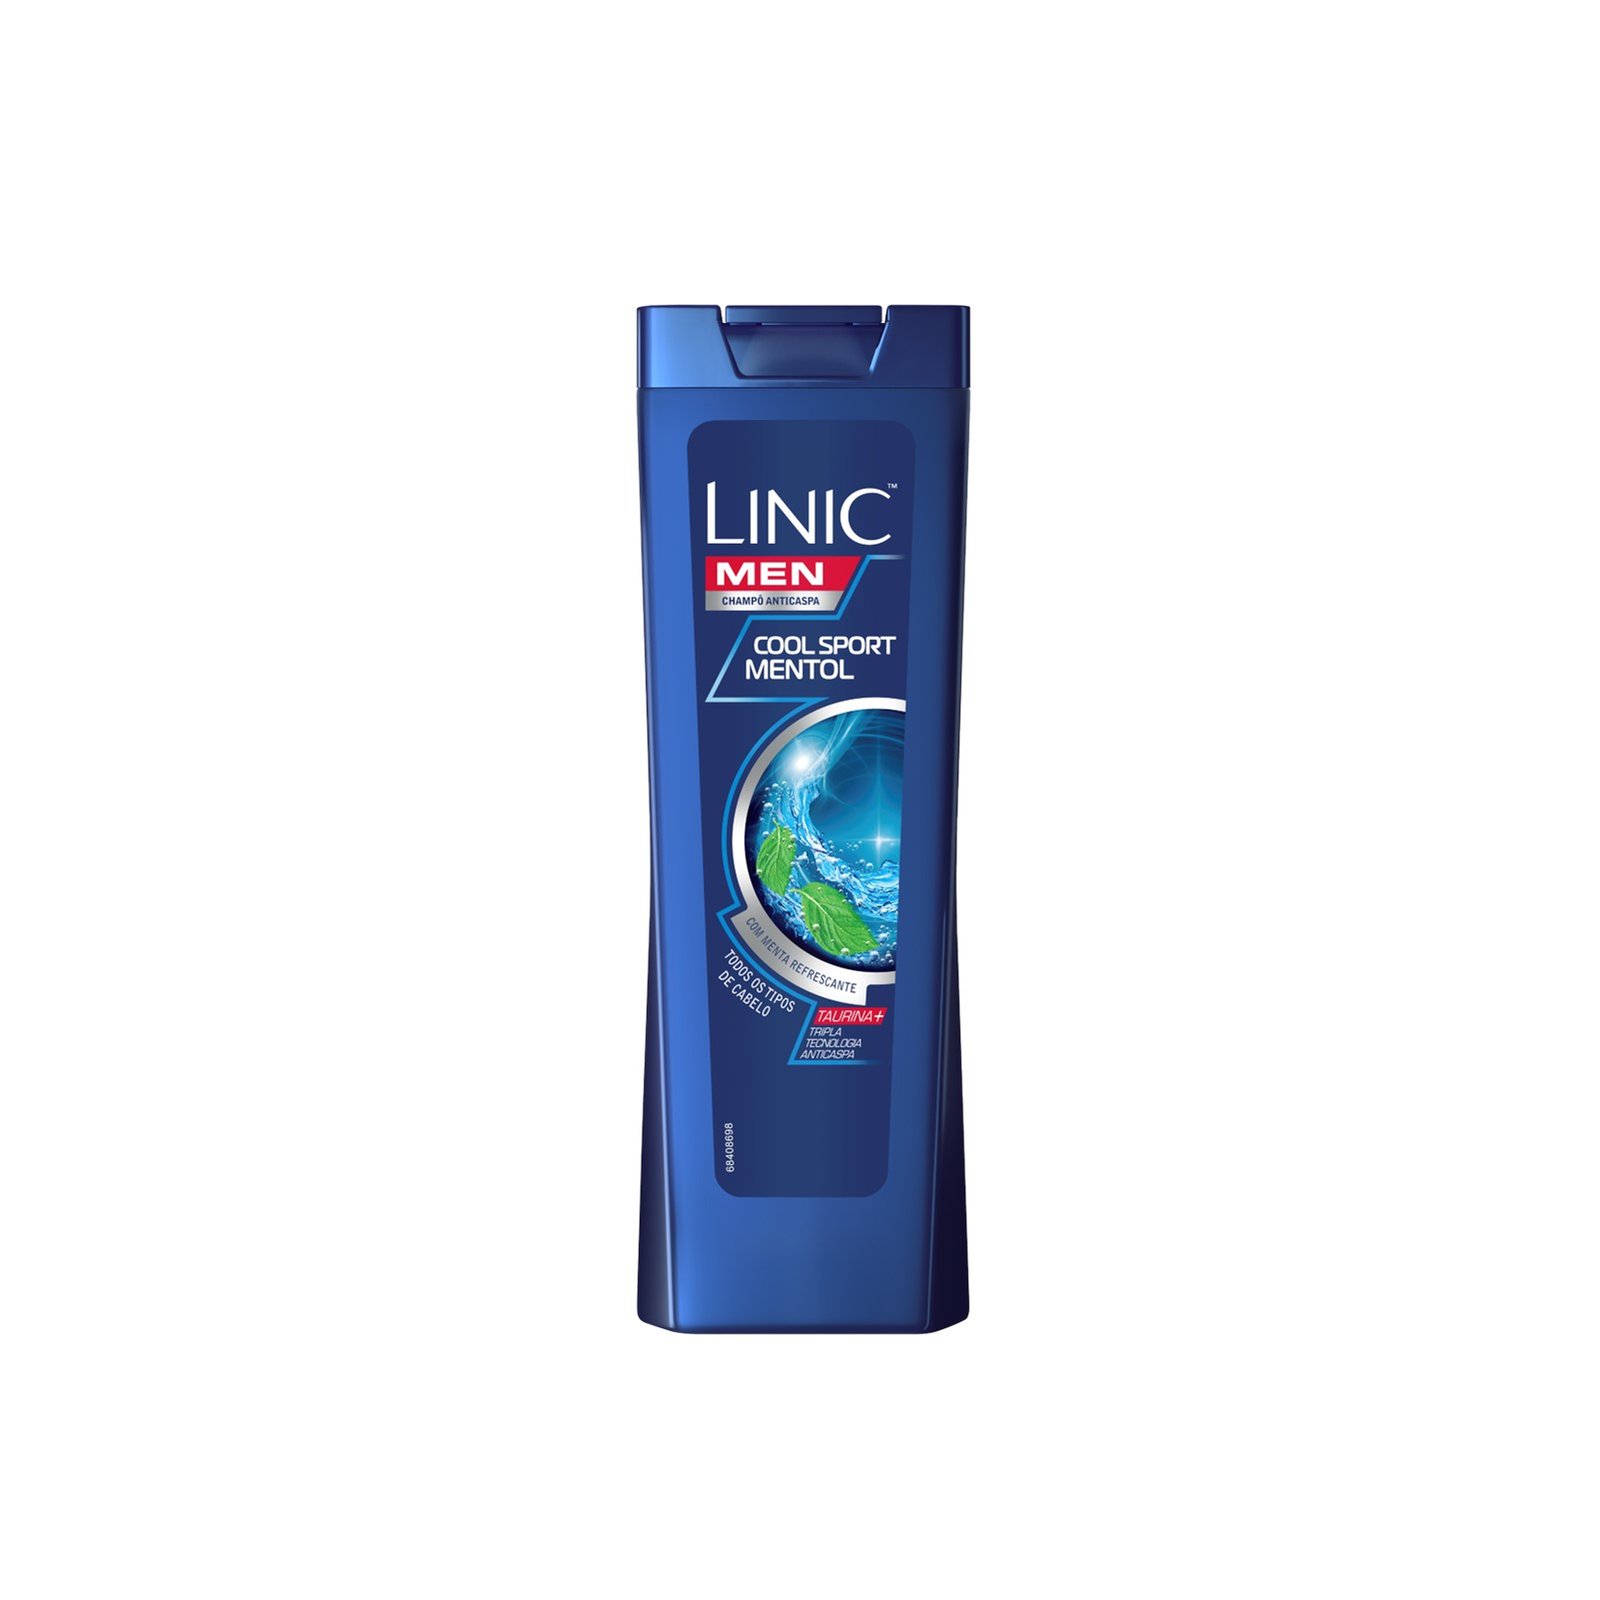 Linic Men Anti-Dandruff Cool Sport Mint Shampoo